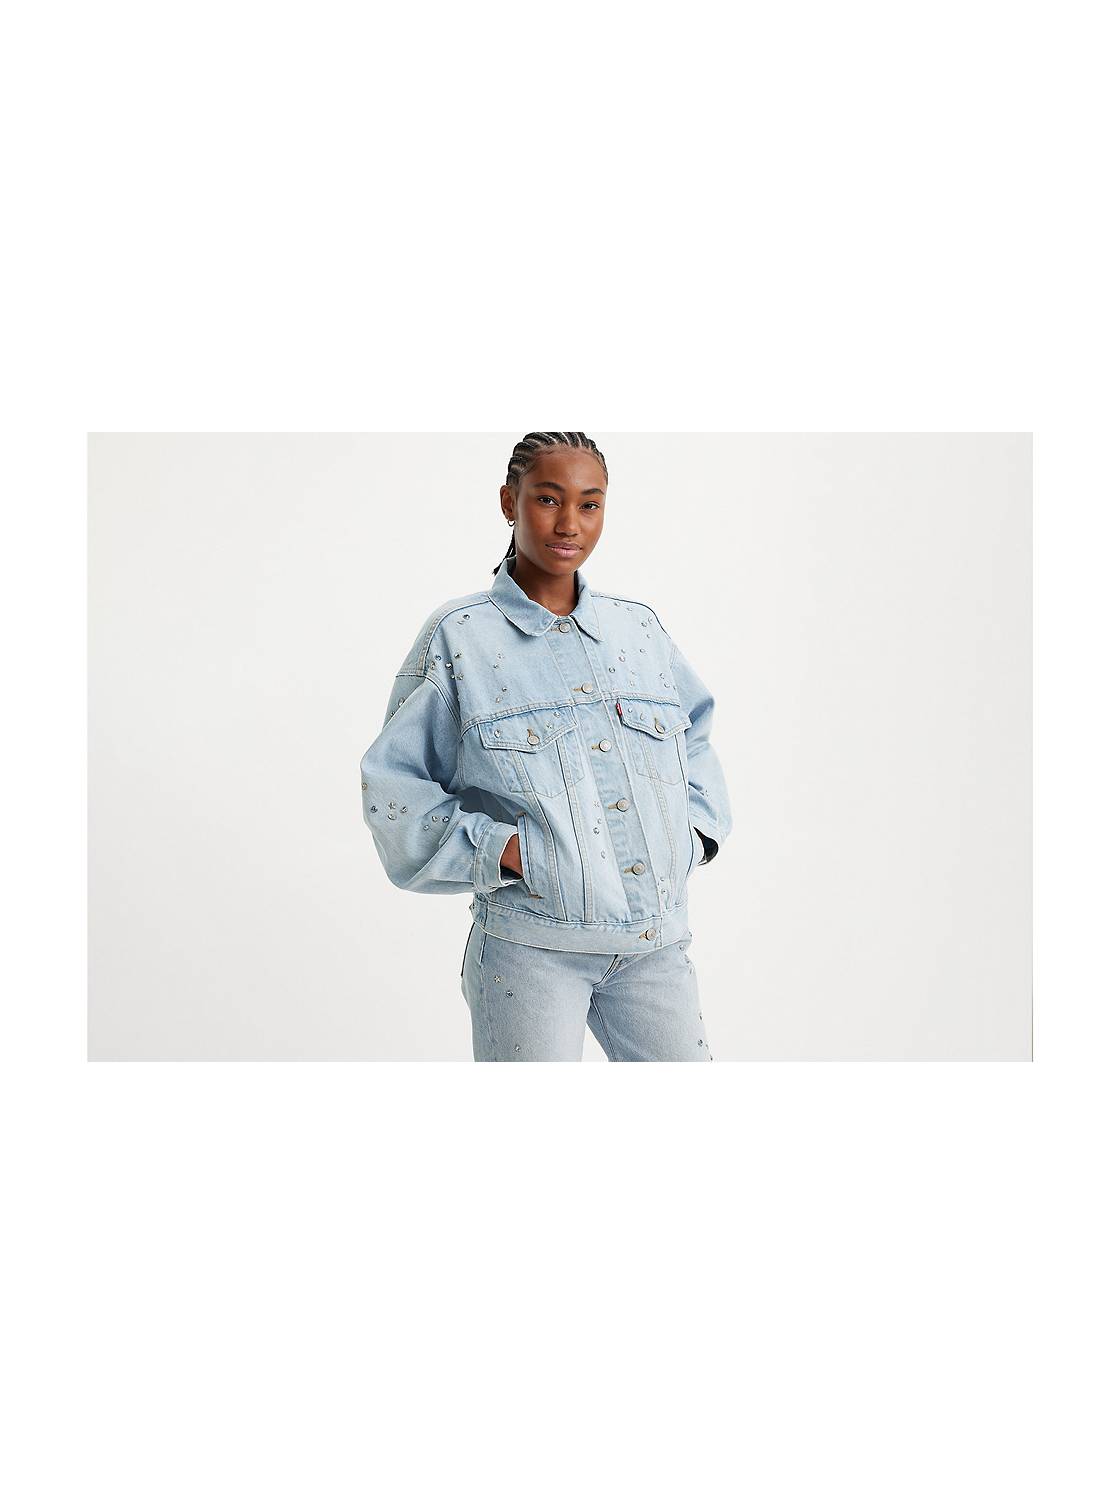 Damier Azur Denim Trucker Jacket - Women - Ready-to-Wear